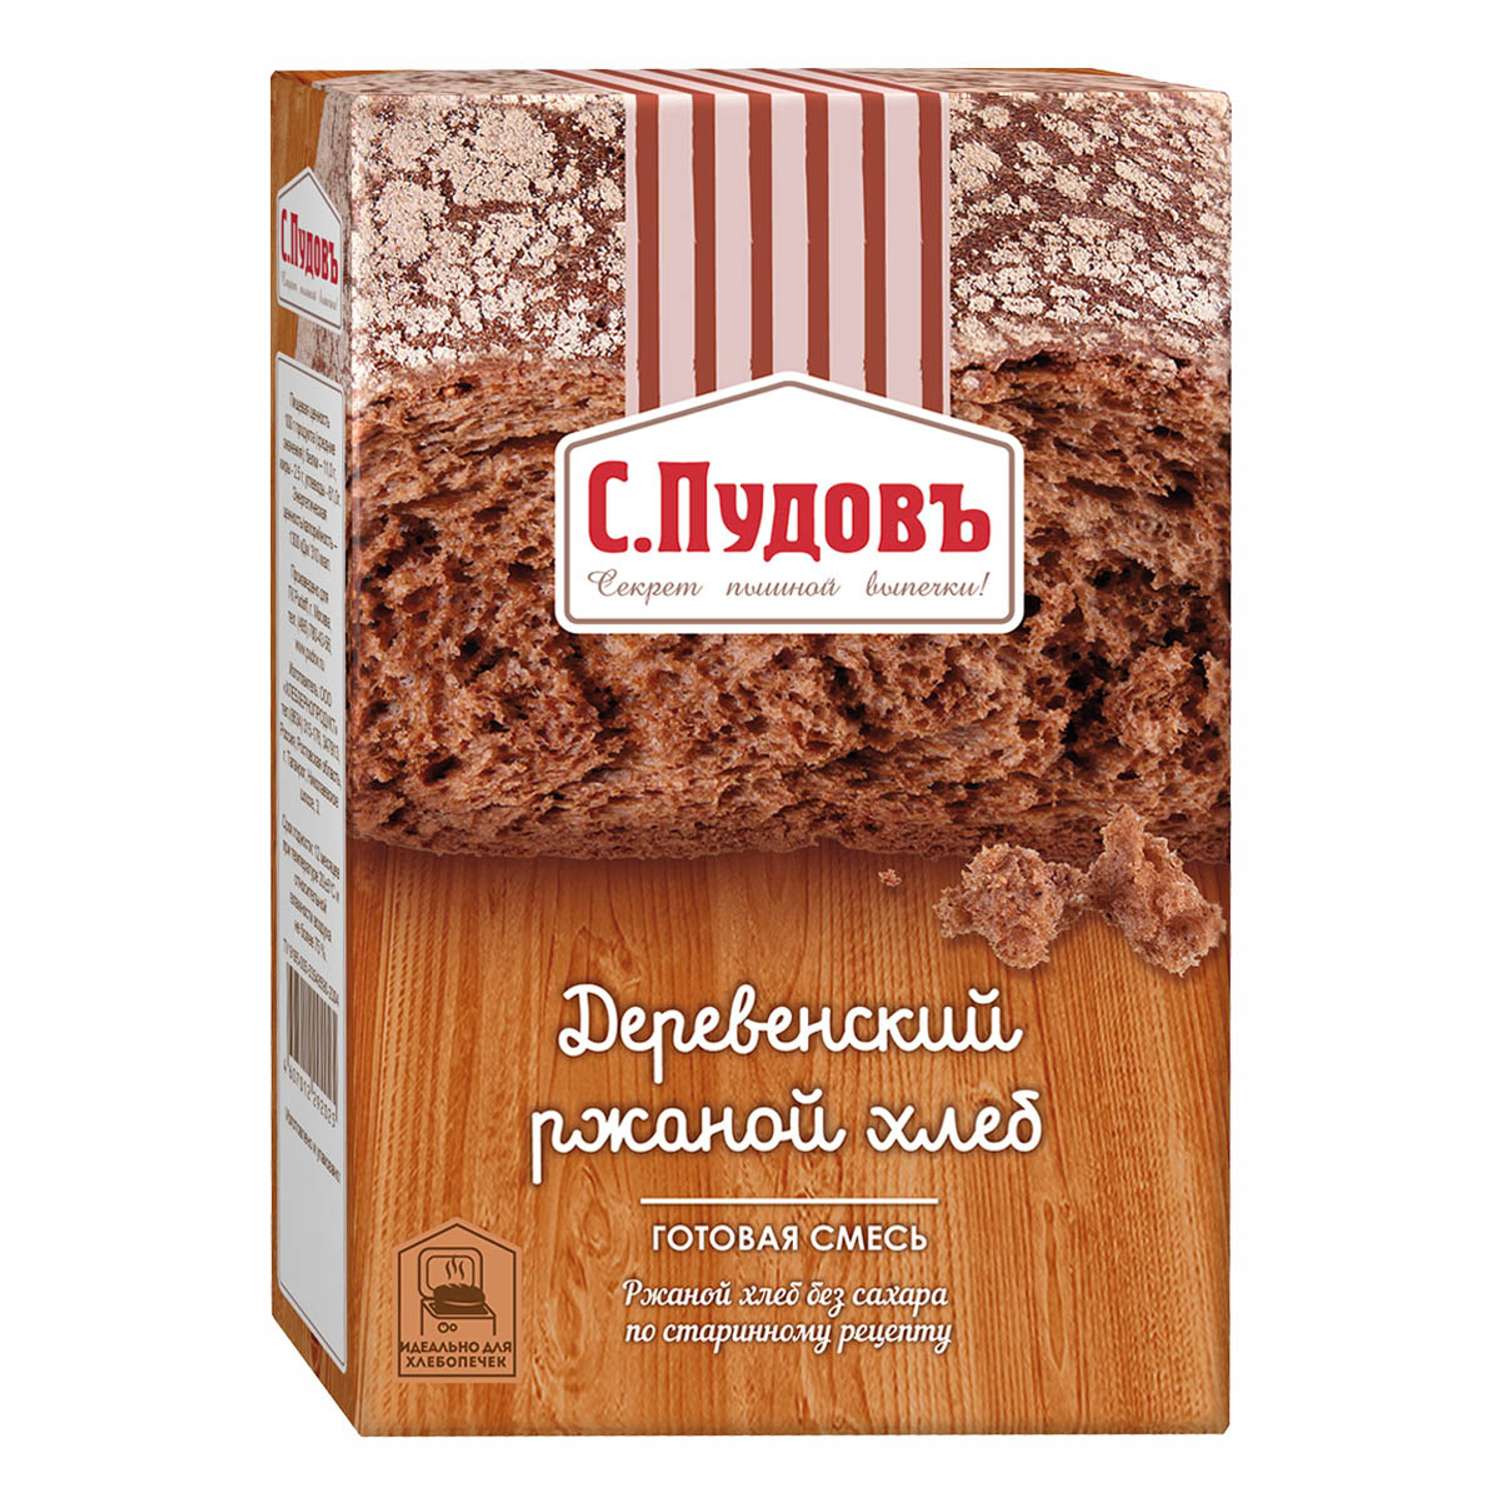 Деревенский ржаной хлеб С. Пудовъ 500 г - фото 1